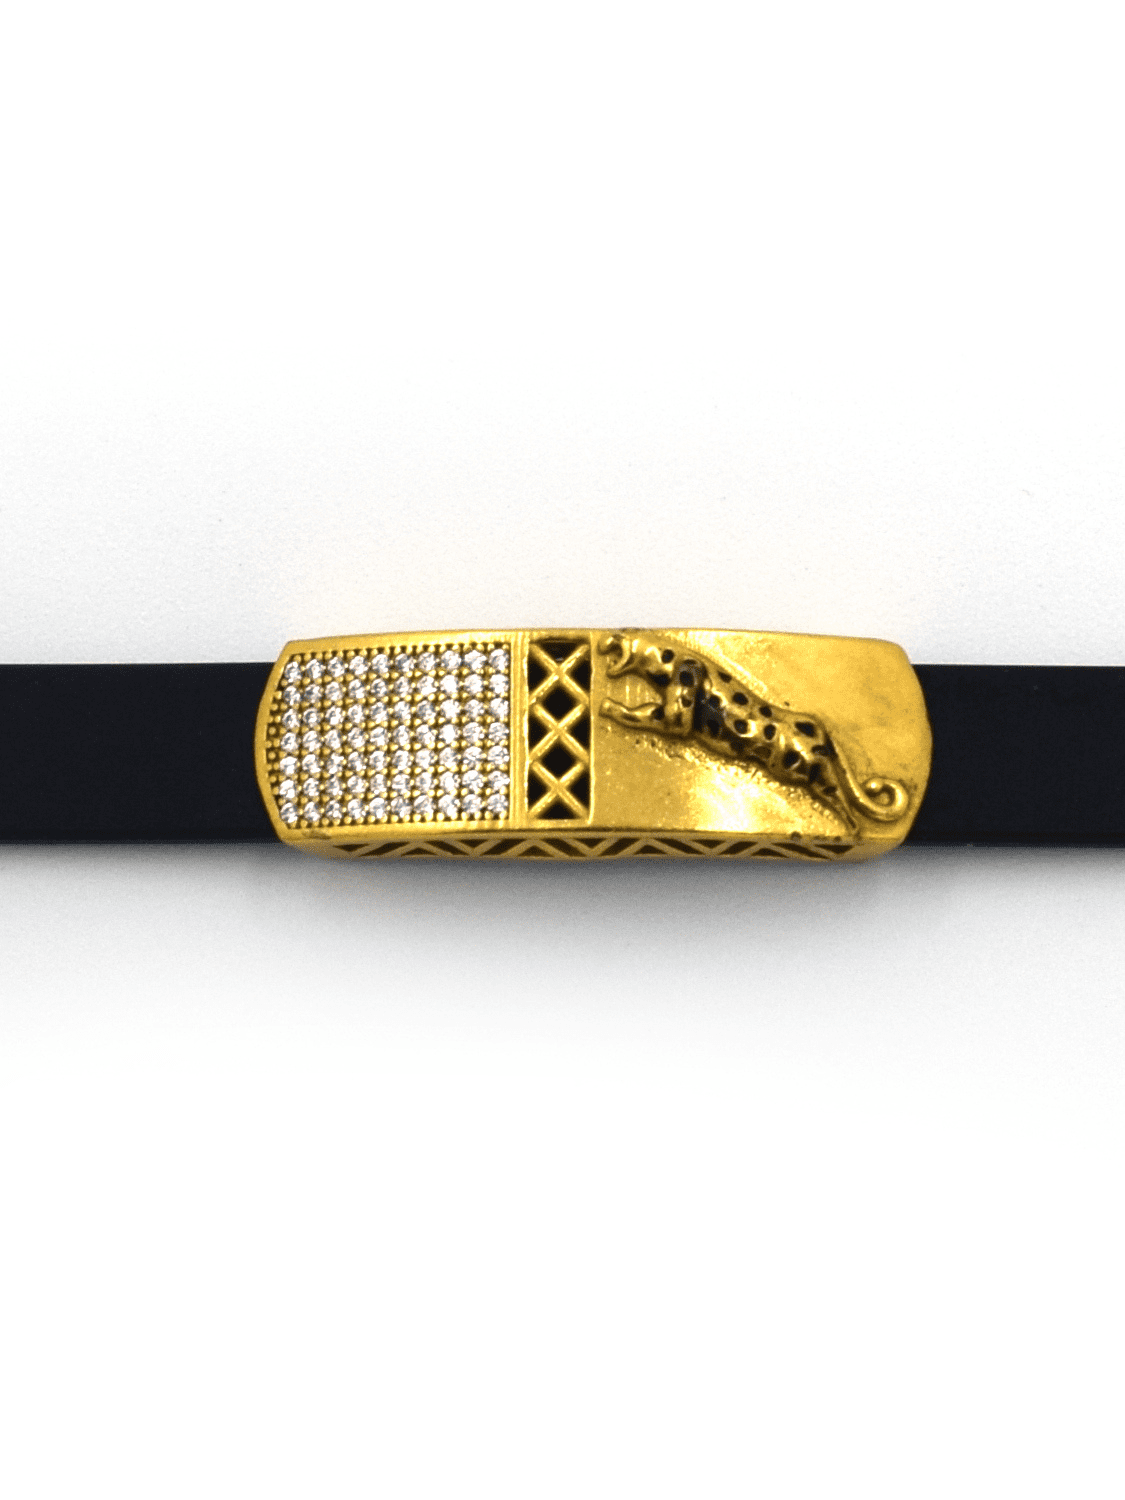 Luxe Black Gold Toned Bracelet - QUEENS JEWELS